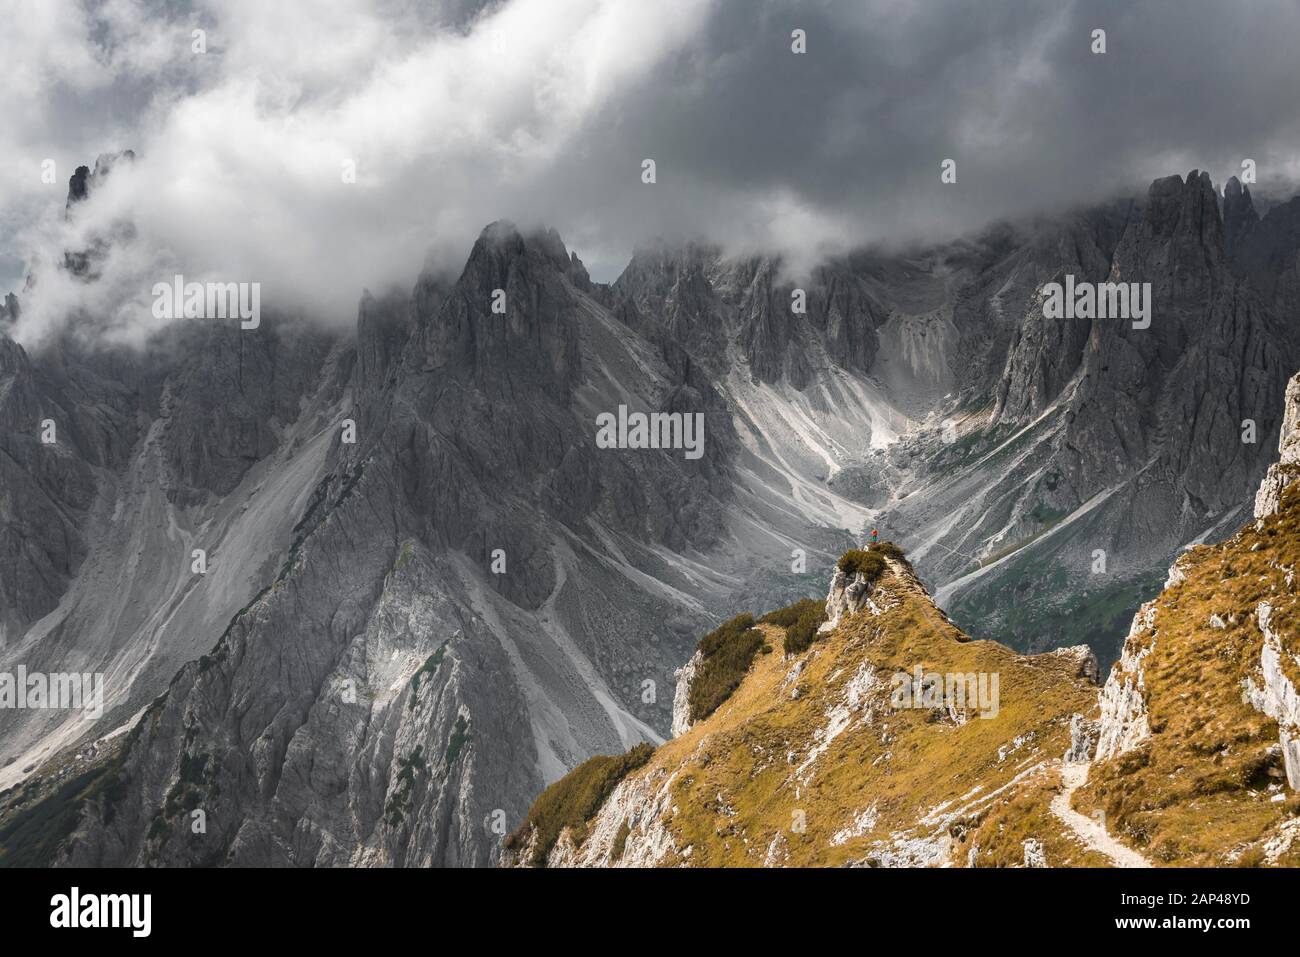 Frau in der roten Jacke stehend auf einem Bergrücken, hinter Gipfeln und spitzen Felsen, dramatische Wolken, Cimon di Croda Liscia und Cadini Gruppe, Auronzo di Stockfoto